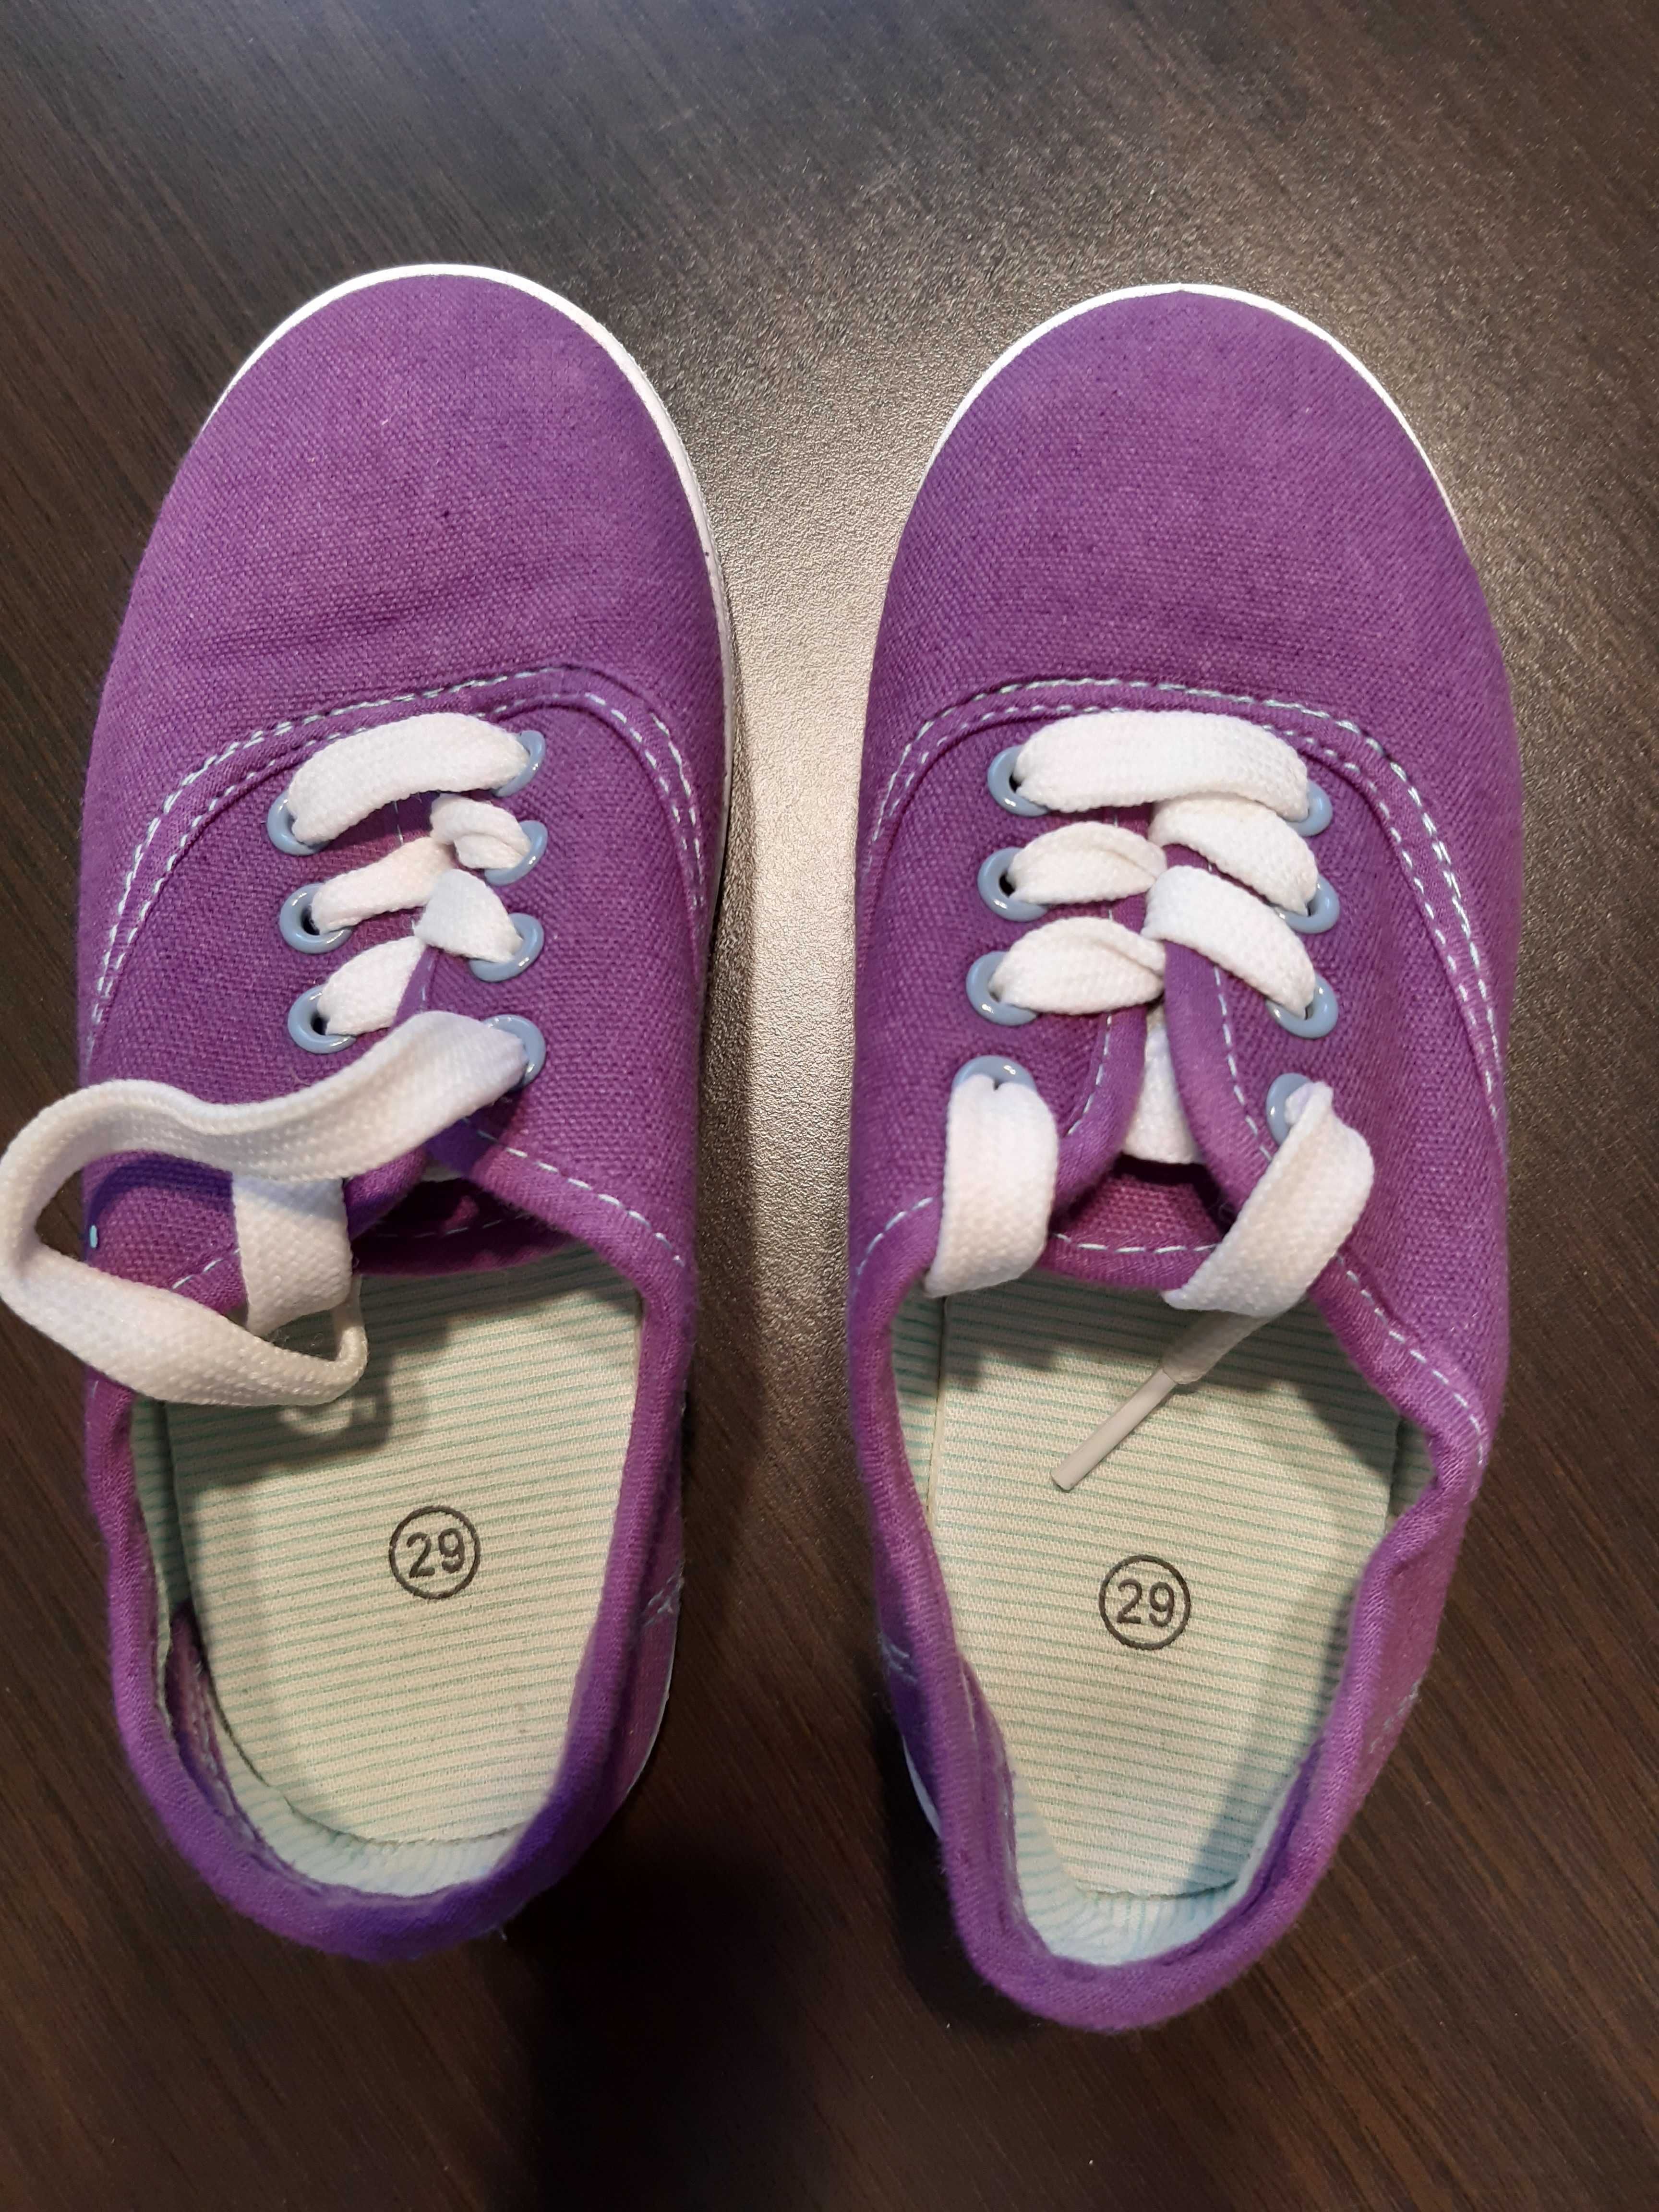 NOWE buty trampki r.29 fioletowe, dziewczęce wiązane